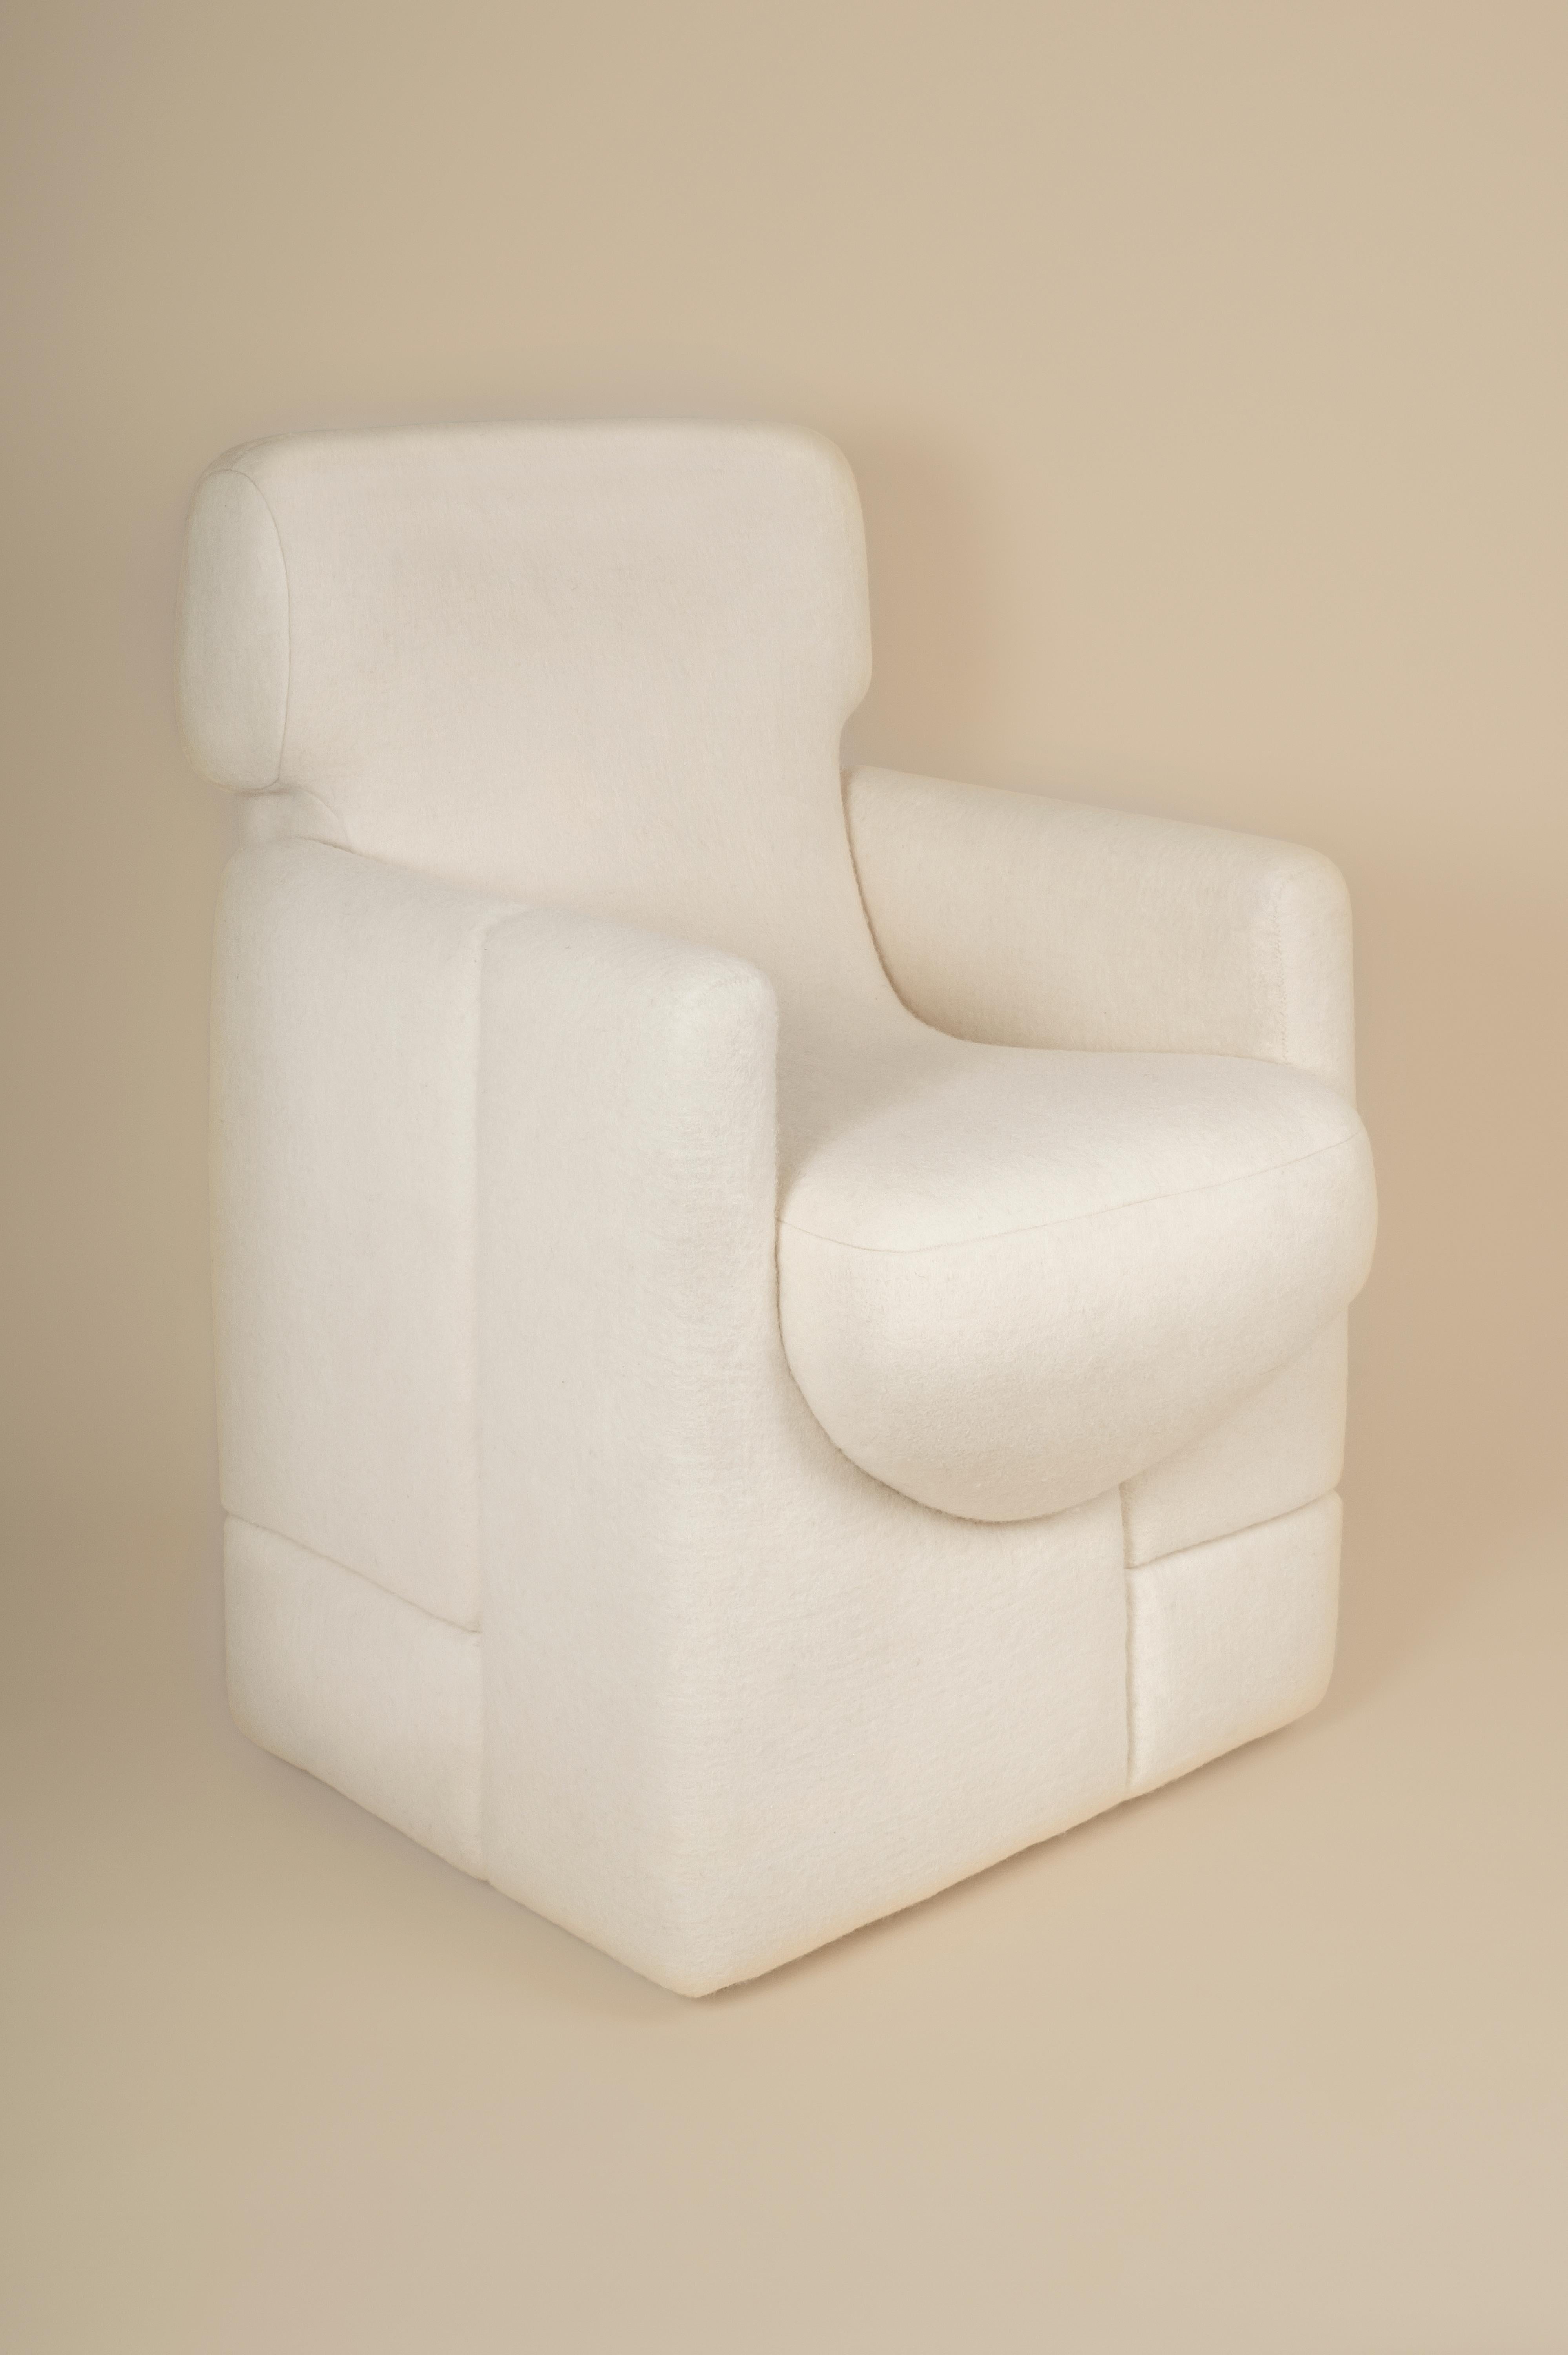 Chaise de salle à manger Sheep conçue par Studio Ahead. La chaise est tapissée d'un feutre de laine mérinos crème personnalisé provenant de moutons de Californie du Nord. Les formes de la chaise s'inspirent de la courbure des pierres trouvées à Muir